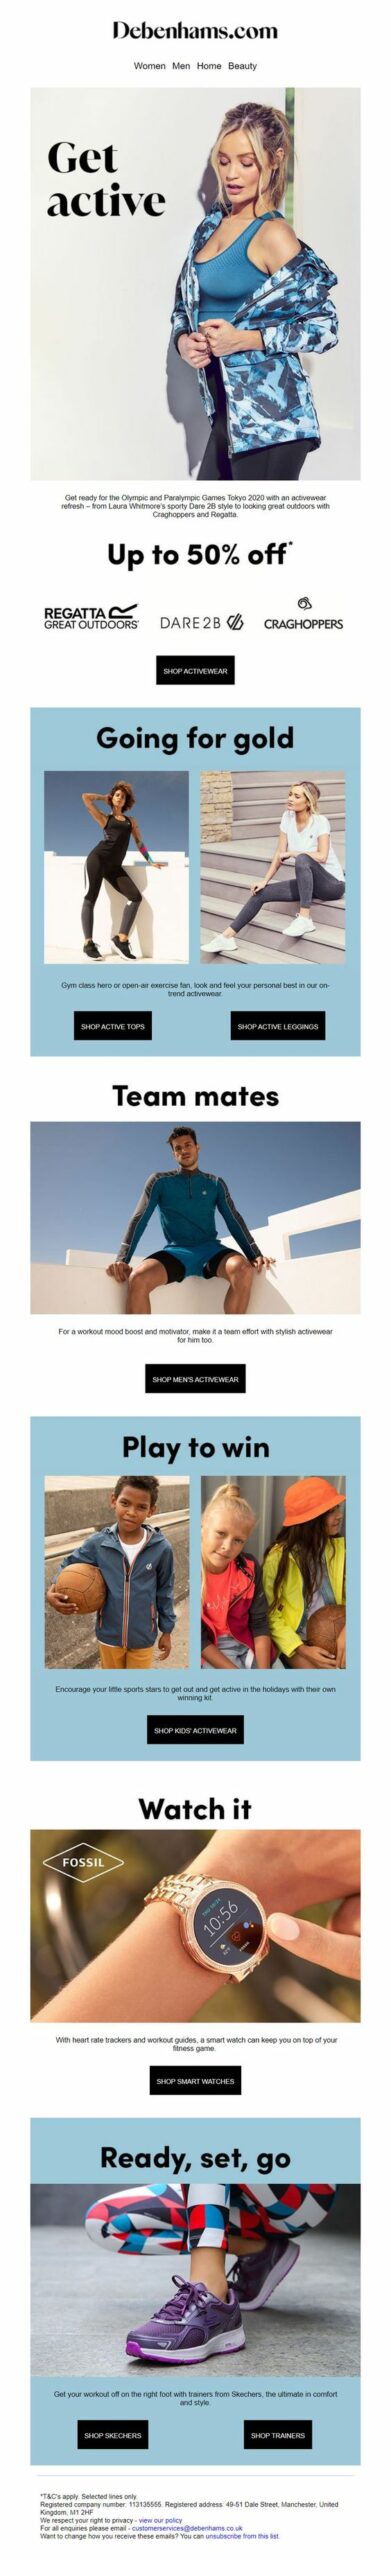 Debenhams Olympics & Paralympics activewear email marketing campaign.